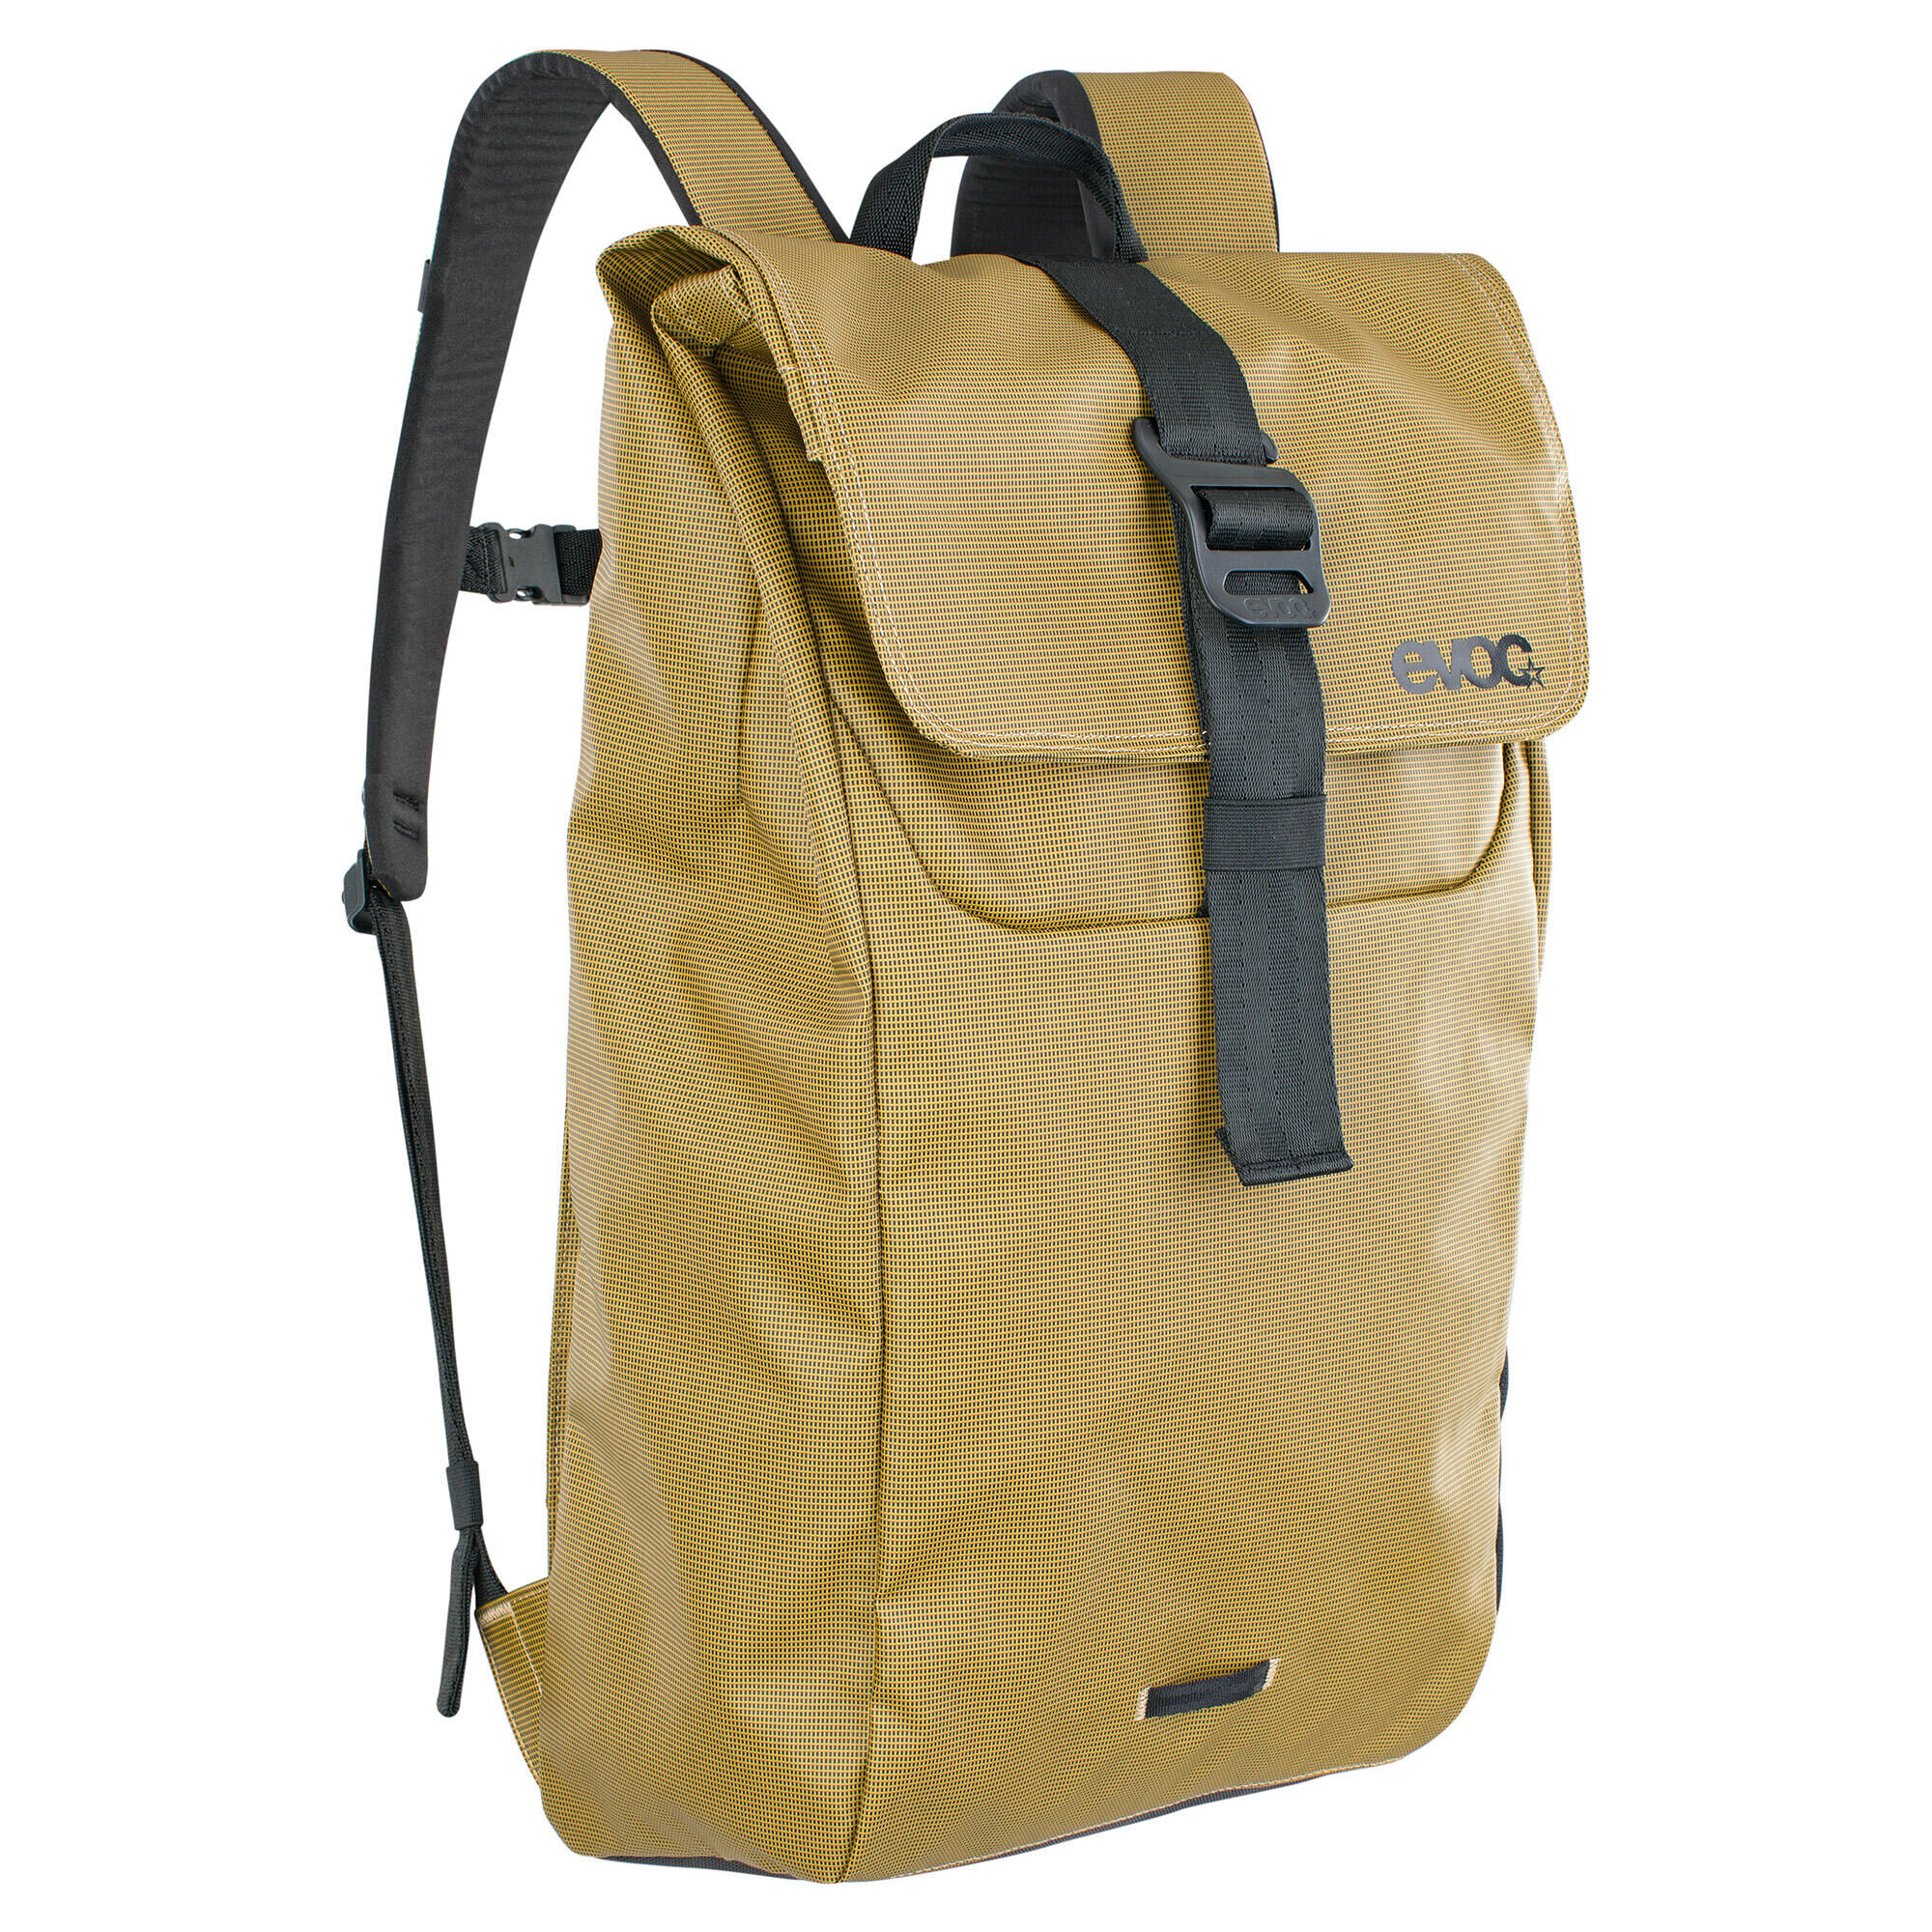 EVOC EVOC Duffle Backpack